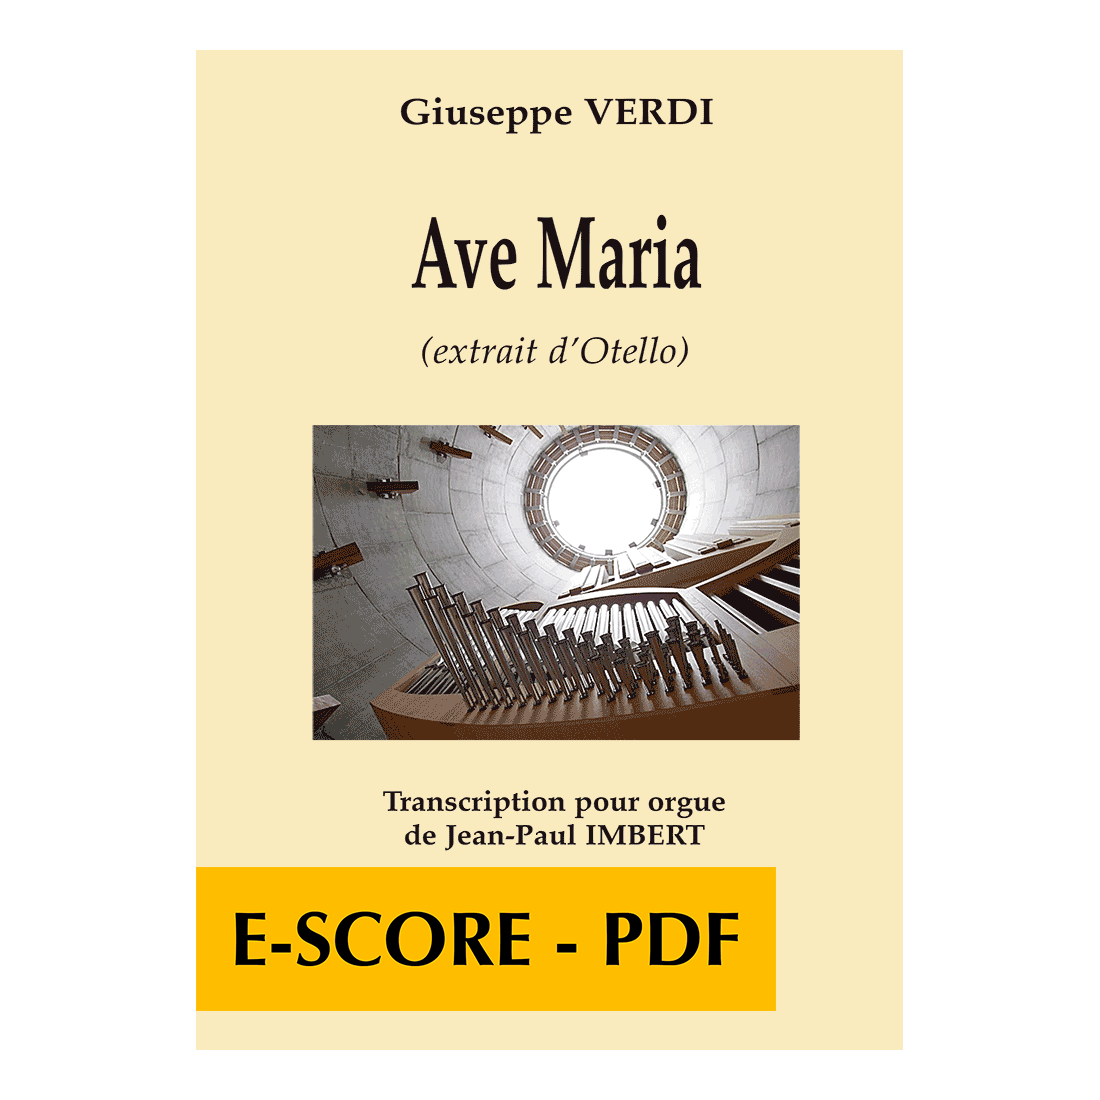 Ave Maria (extrait d'Otello) pour orgue - E-score PDF